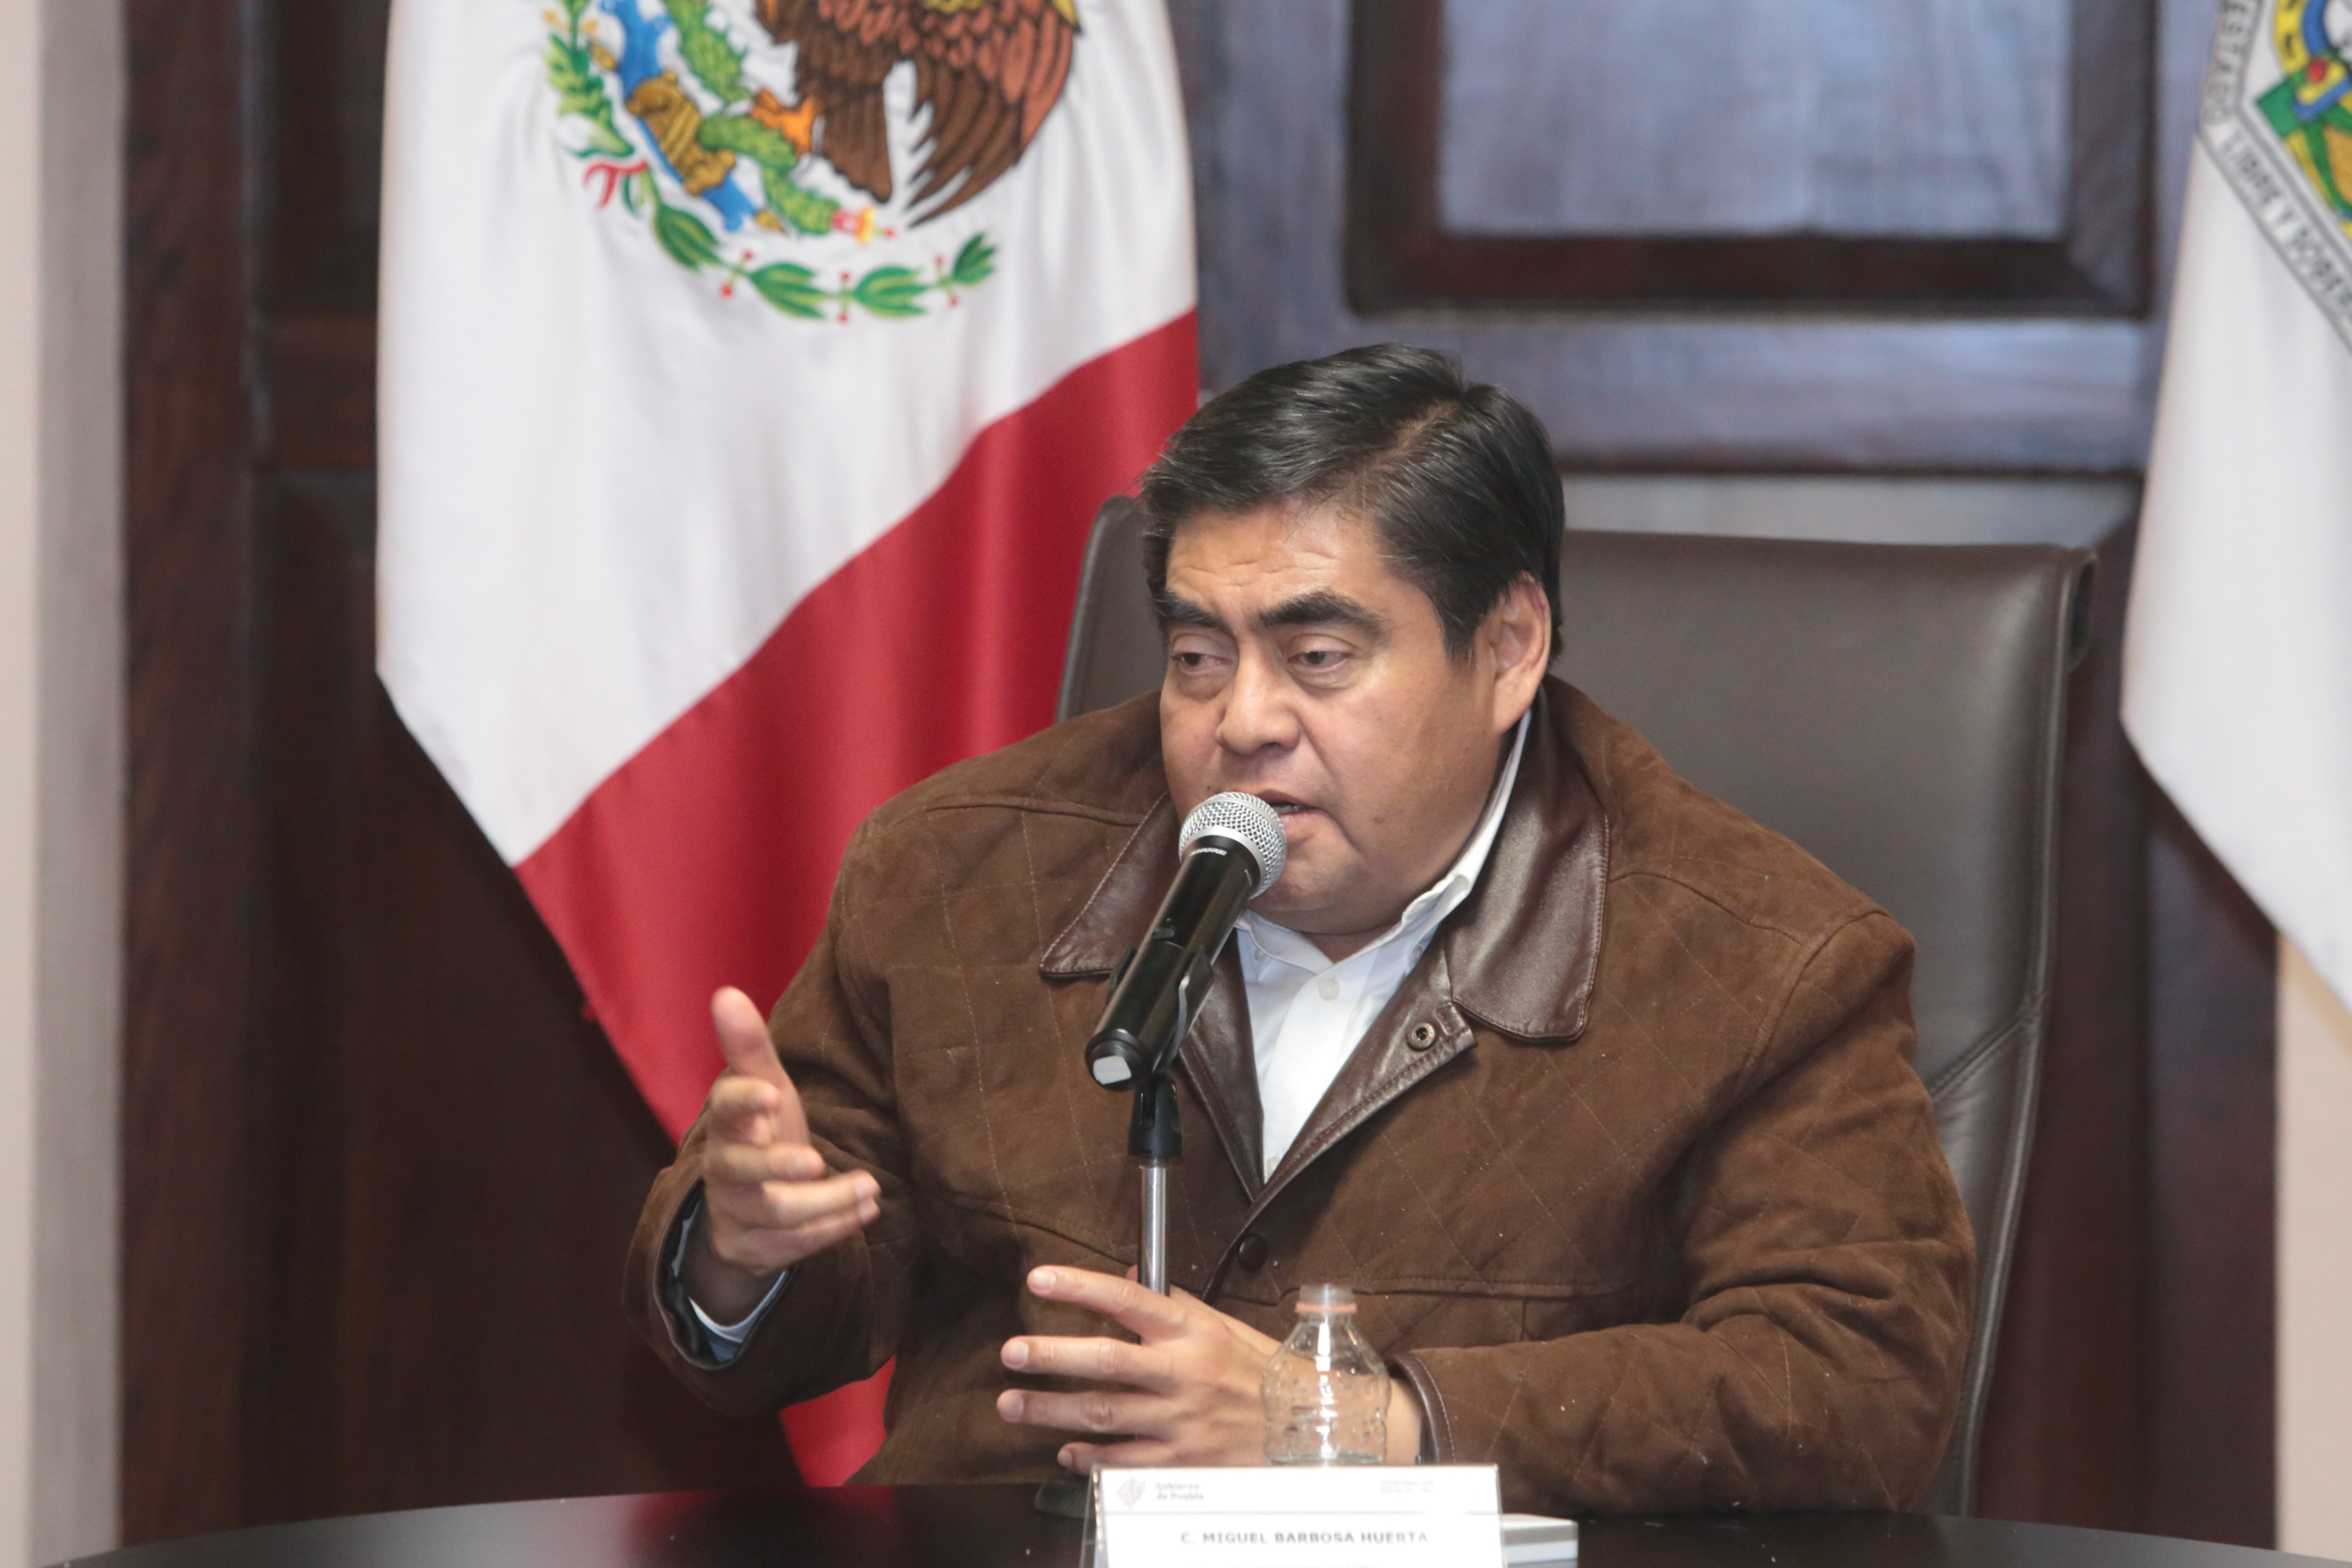 Mi gobierno mantiene la lucha contra la corrupción: Miguel Barbosa Huerta.